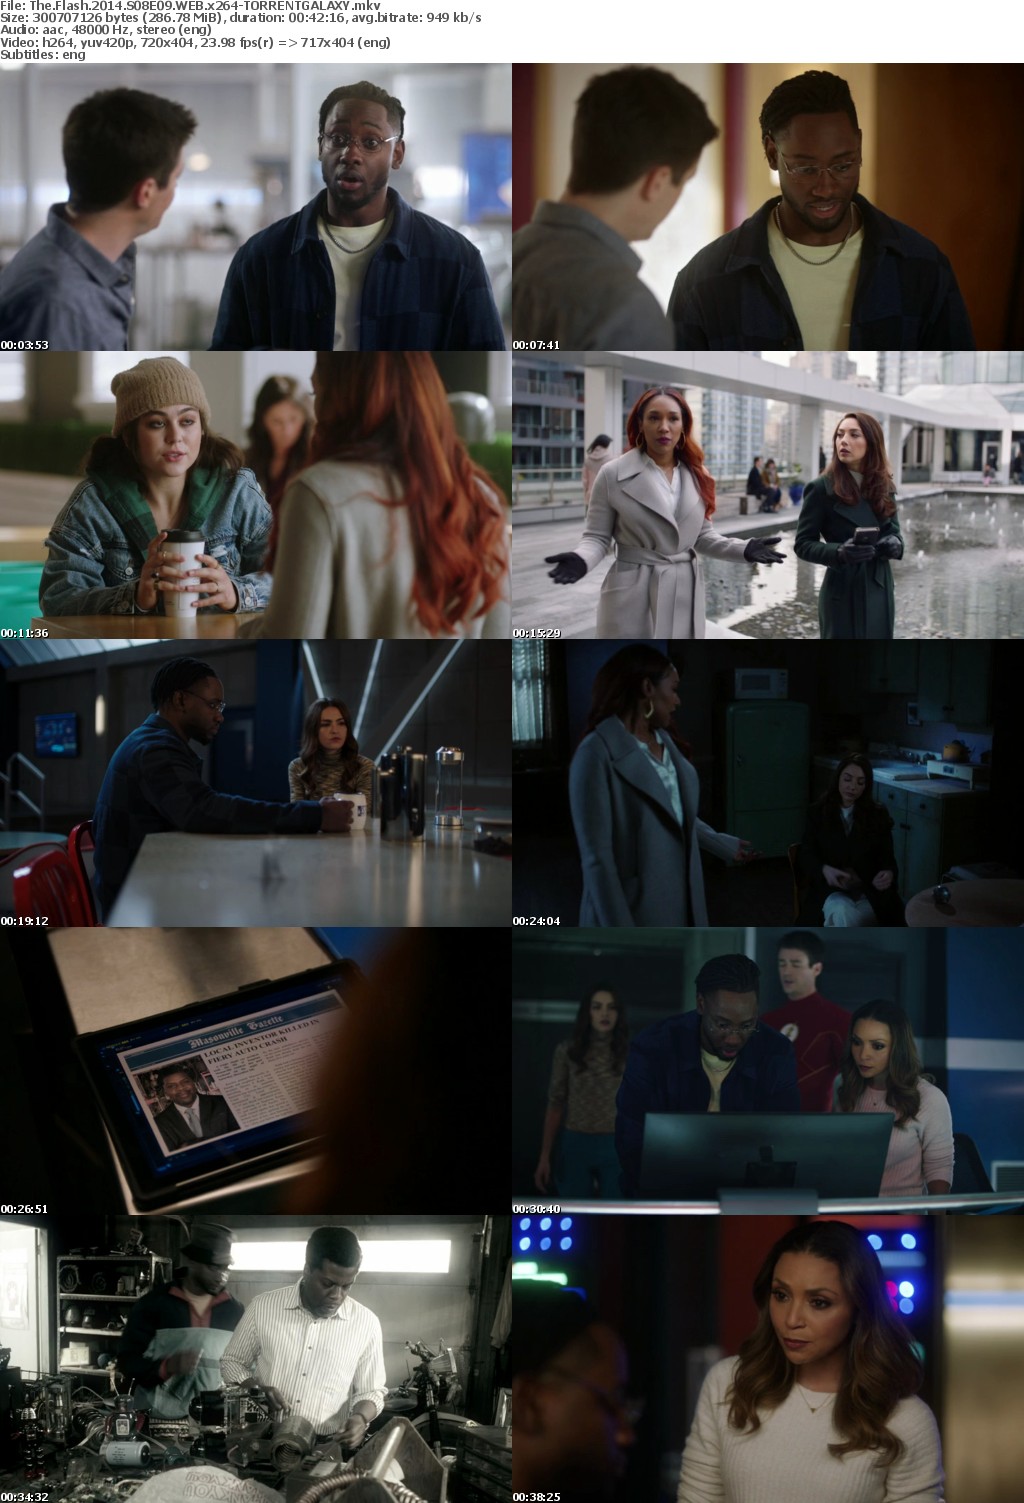 The Flash 2014 S08E09 WEB x264-GALAXY